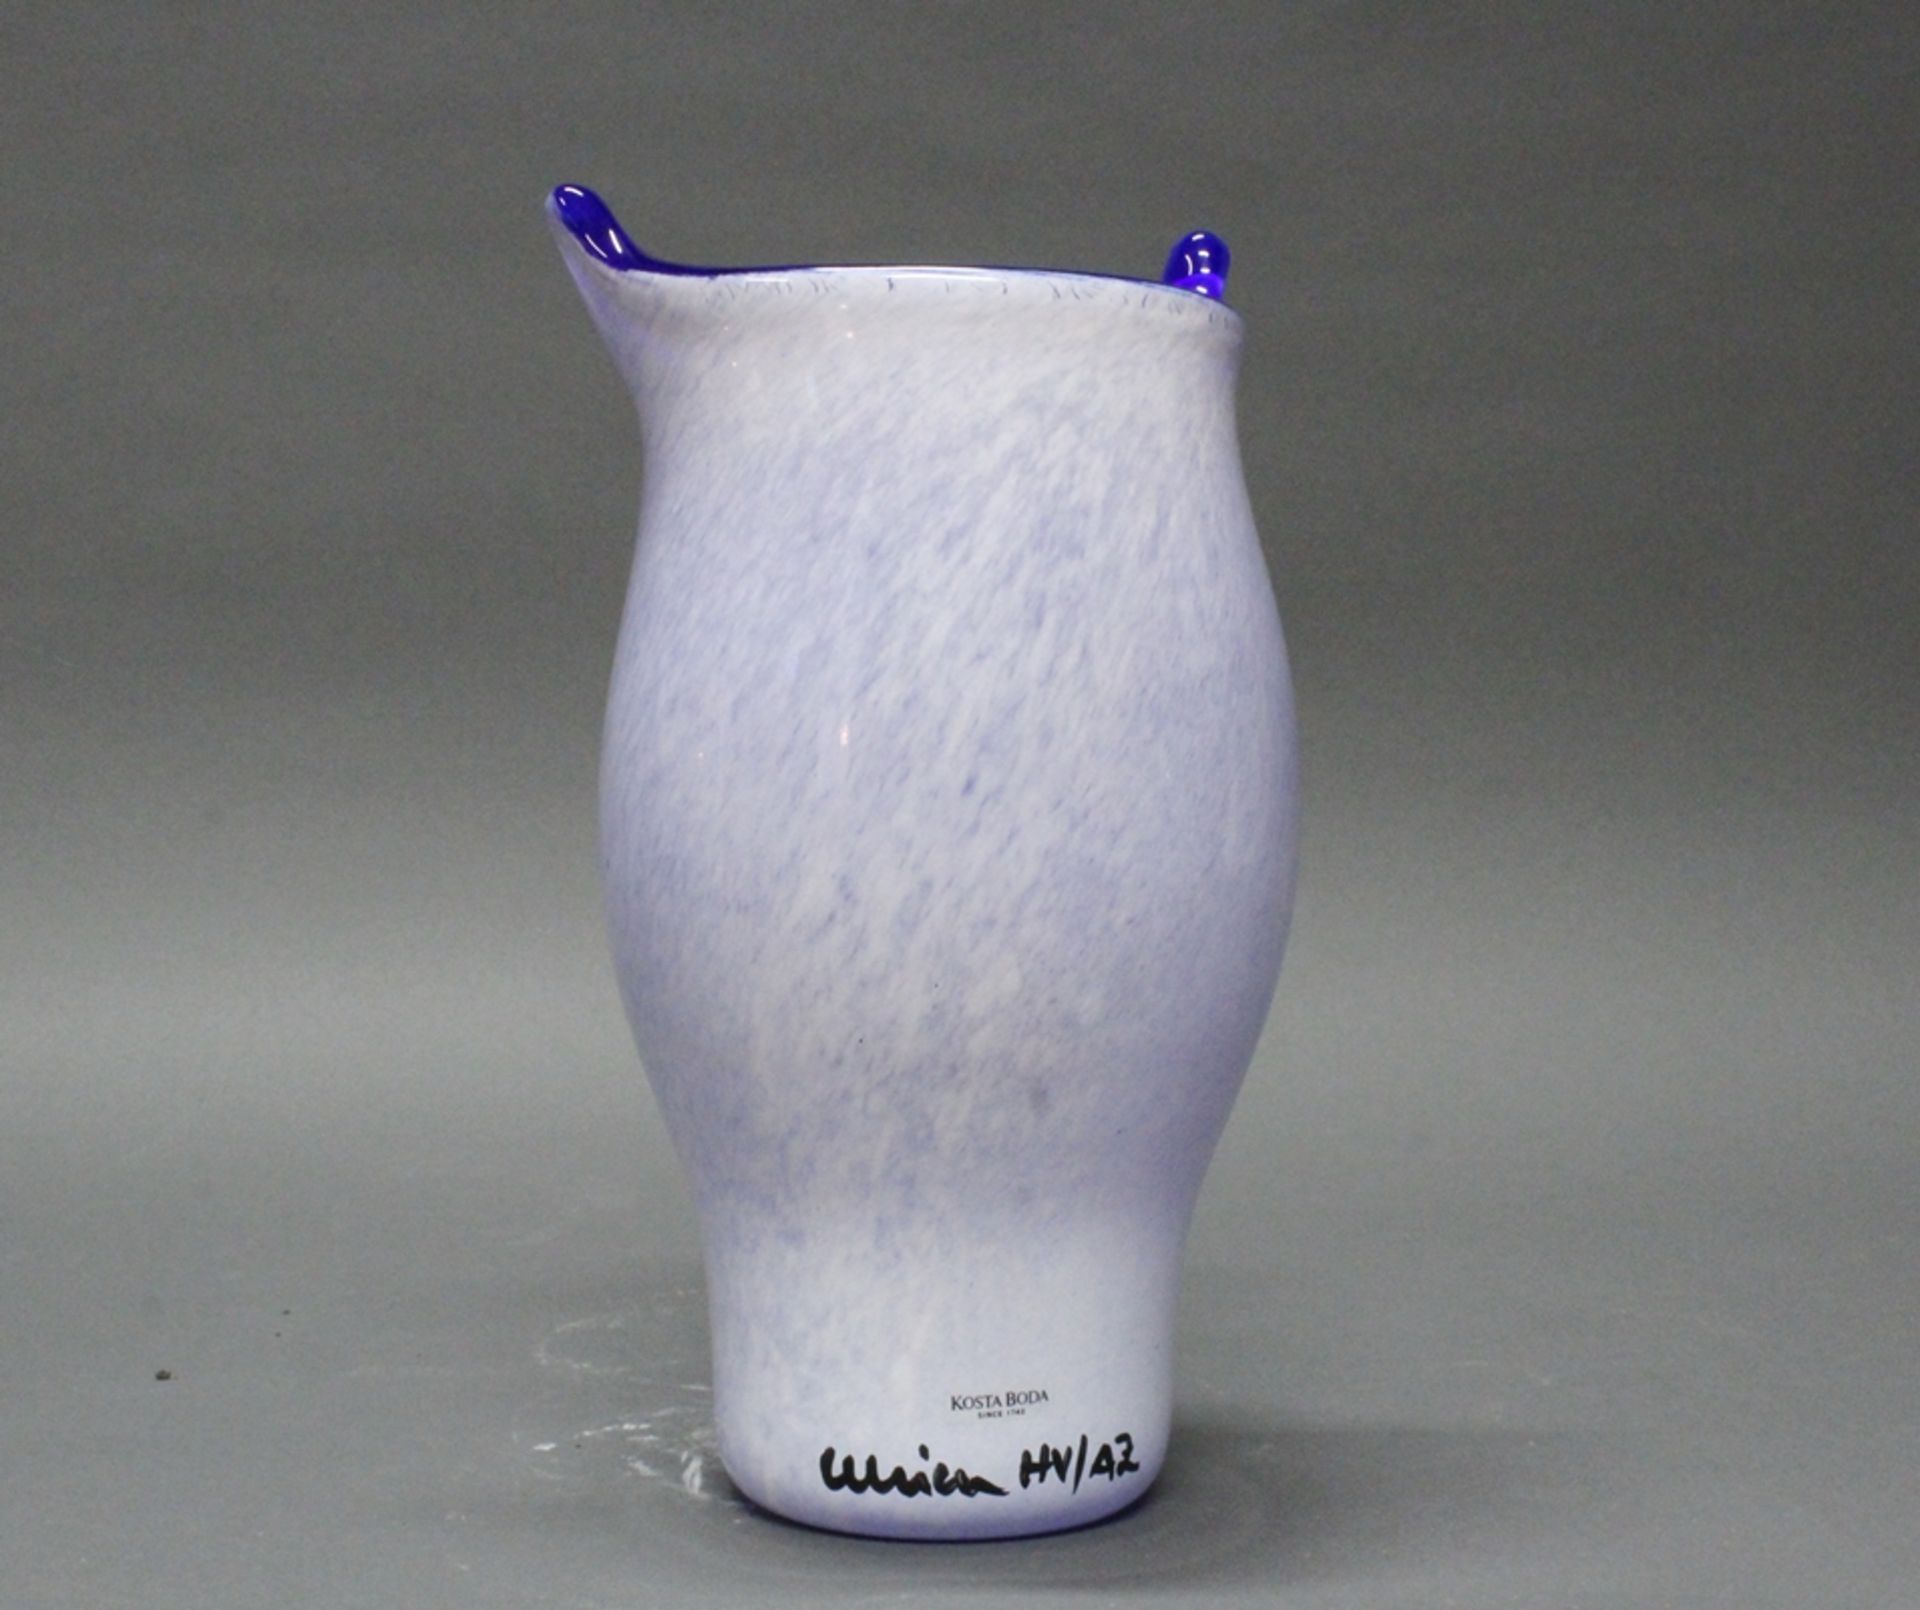 Vase, "Open Mind", Kosta Boda, Nr. 7048744, Glas, polychrom, Modellentwurf von Ulrica Hydman-Vallie - Image 2 of 3